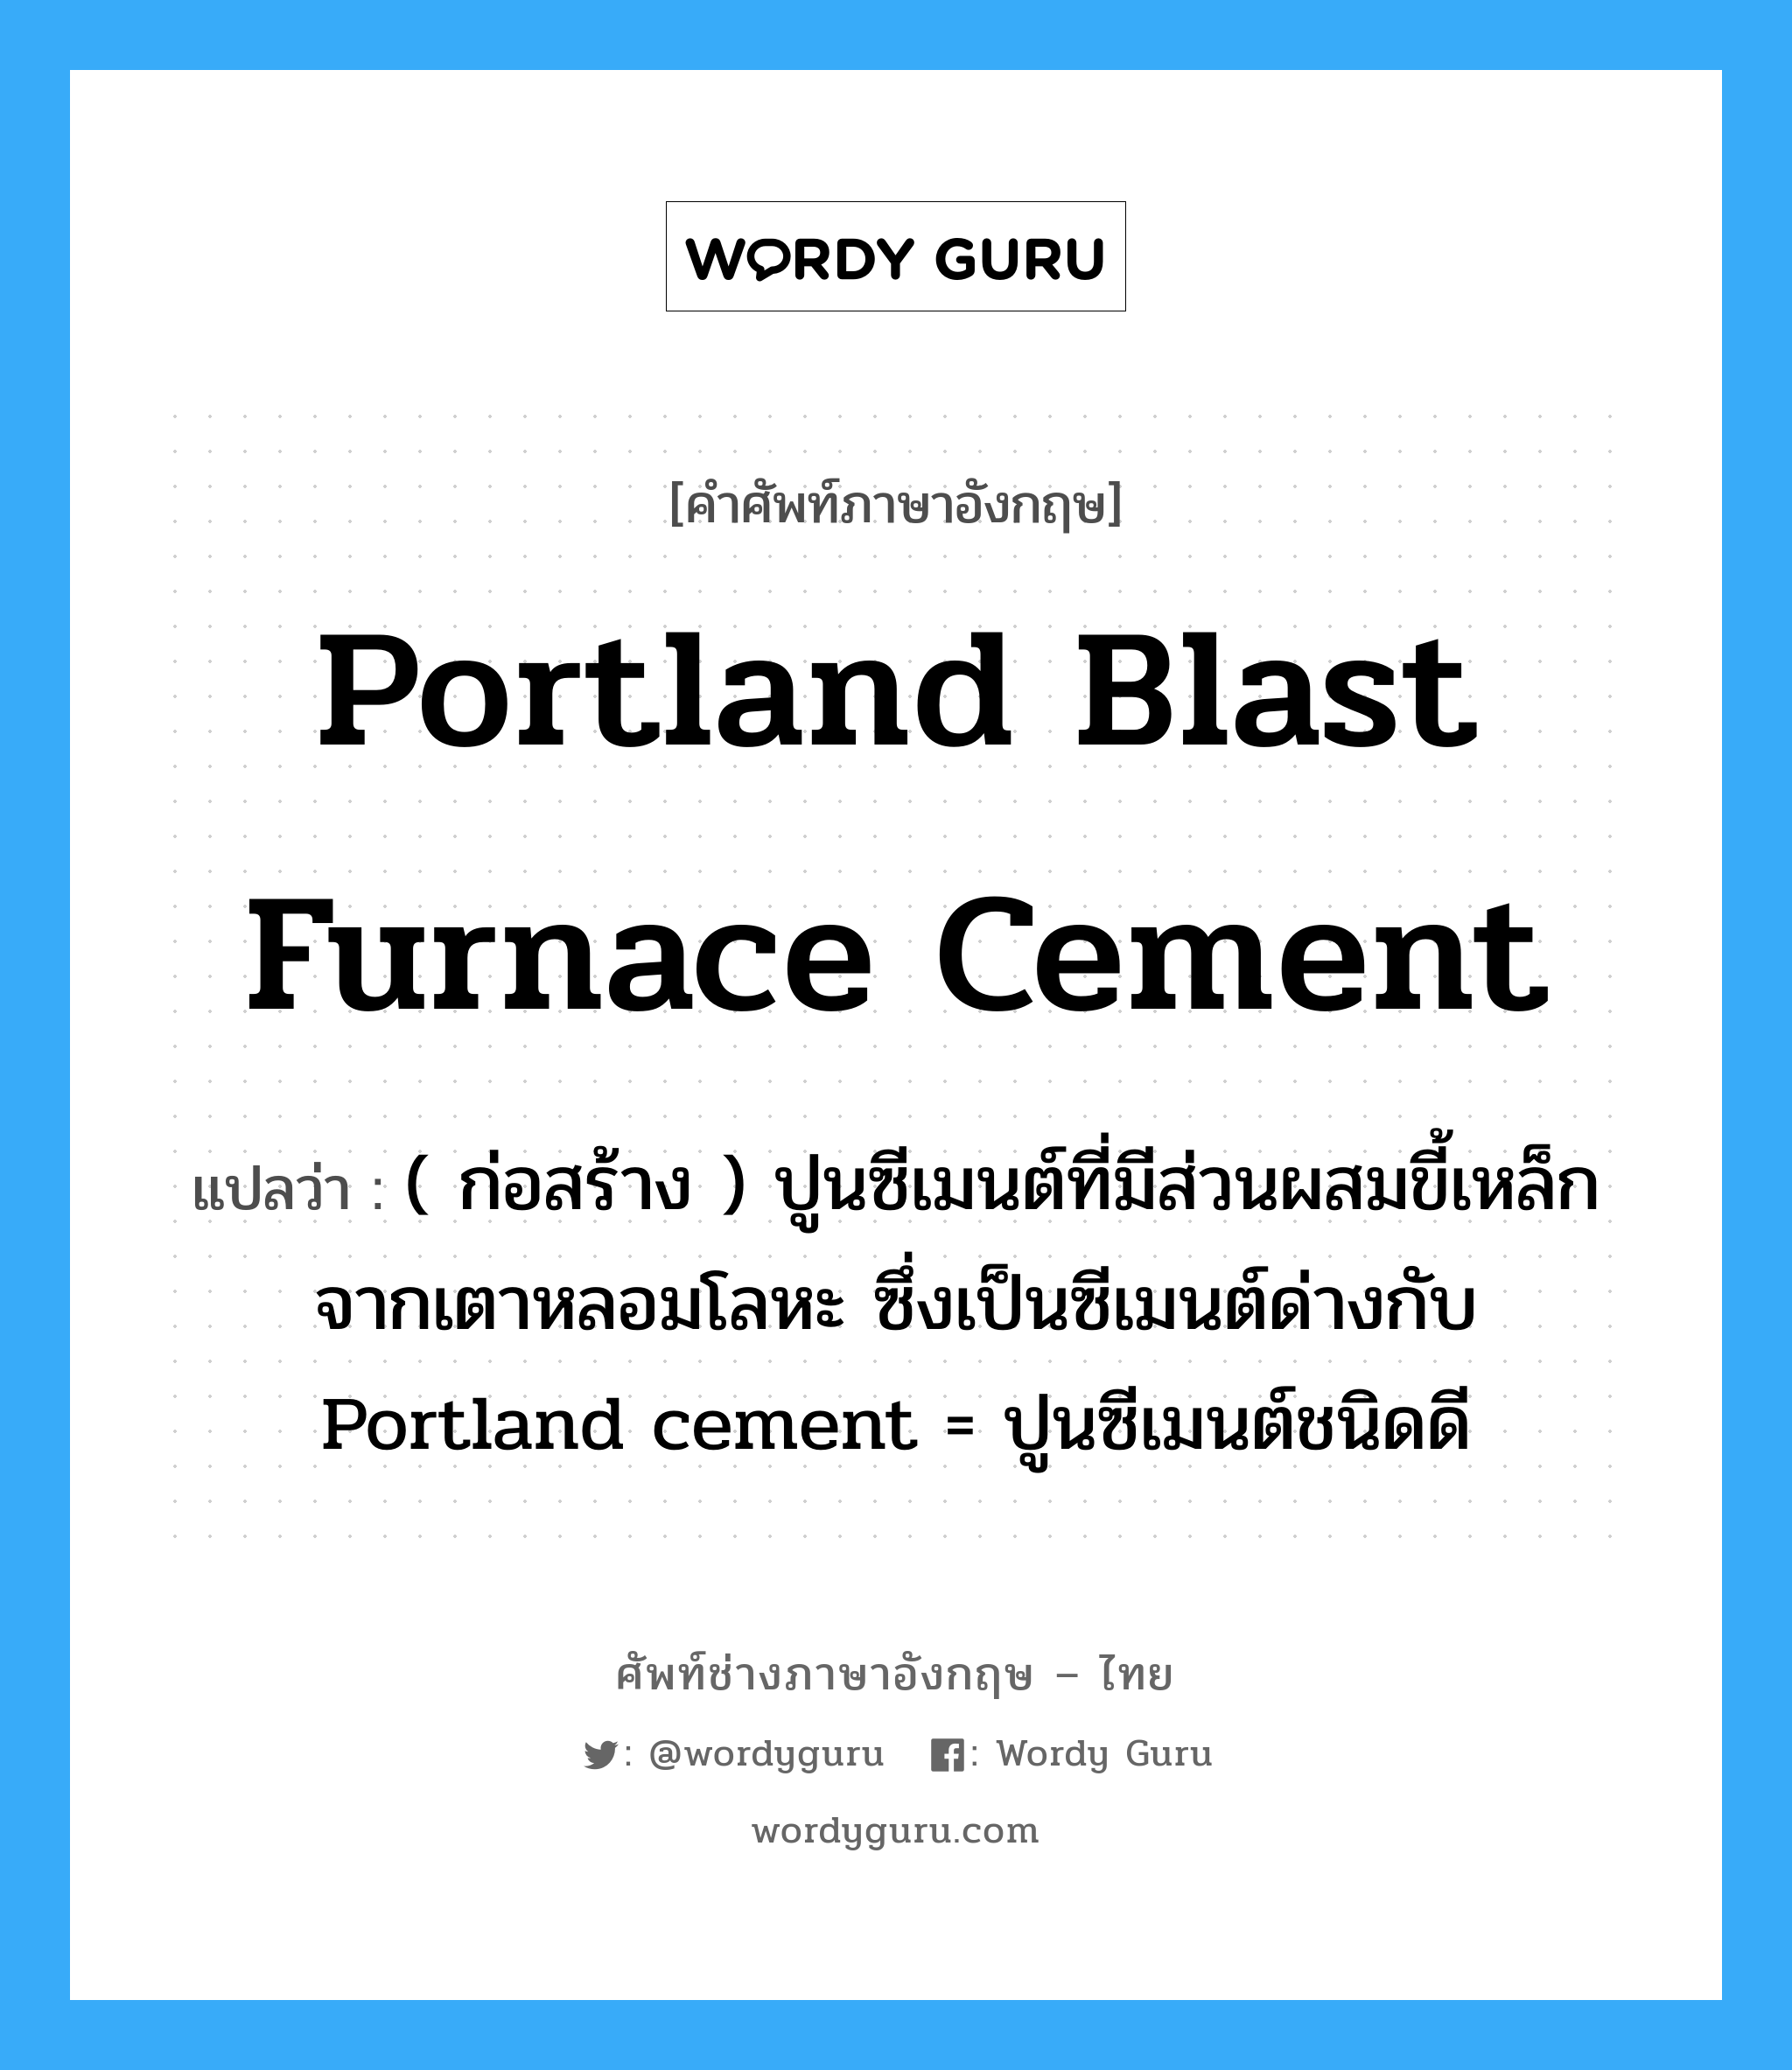 portland blast furnace cement แปลว่า?, คำศัพท์ช่างภาษาอังกฤษ - ไทย portland blast furnace cement คำศัพท์ภาษาอังกฤษ portland blast furnace cement แปลว่า ( ก่อสร้าง ) ปูนซีเมนต์ที่มีส่วนผสมขี้เหล็ก จากเตาหลอมโลหะ ซึ่งเป็นซีเมนต์ด่างกับ Portland cement = ปูนซีเมนต์ชนิดดี